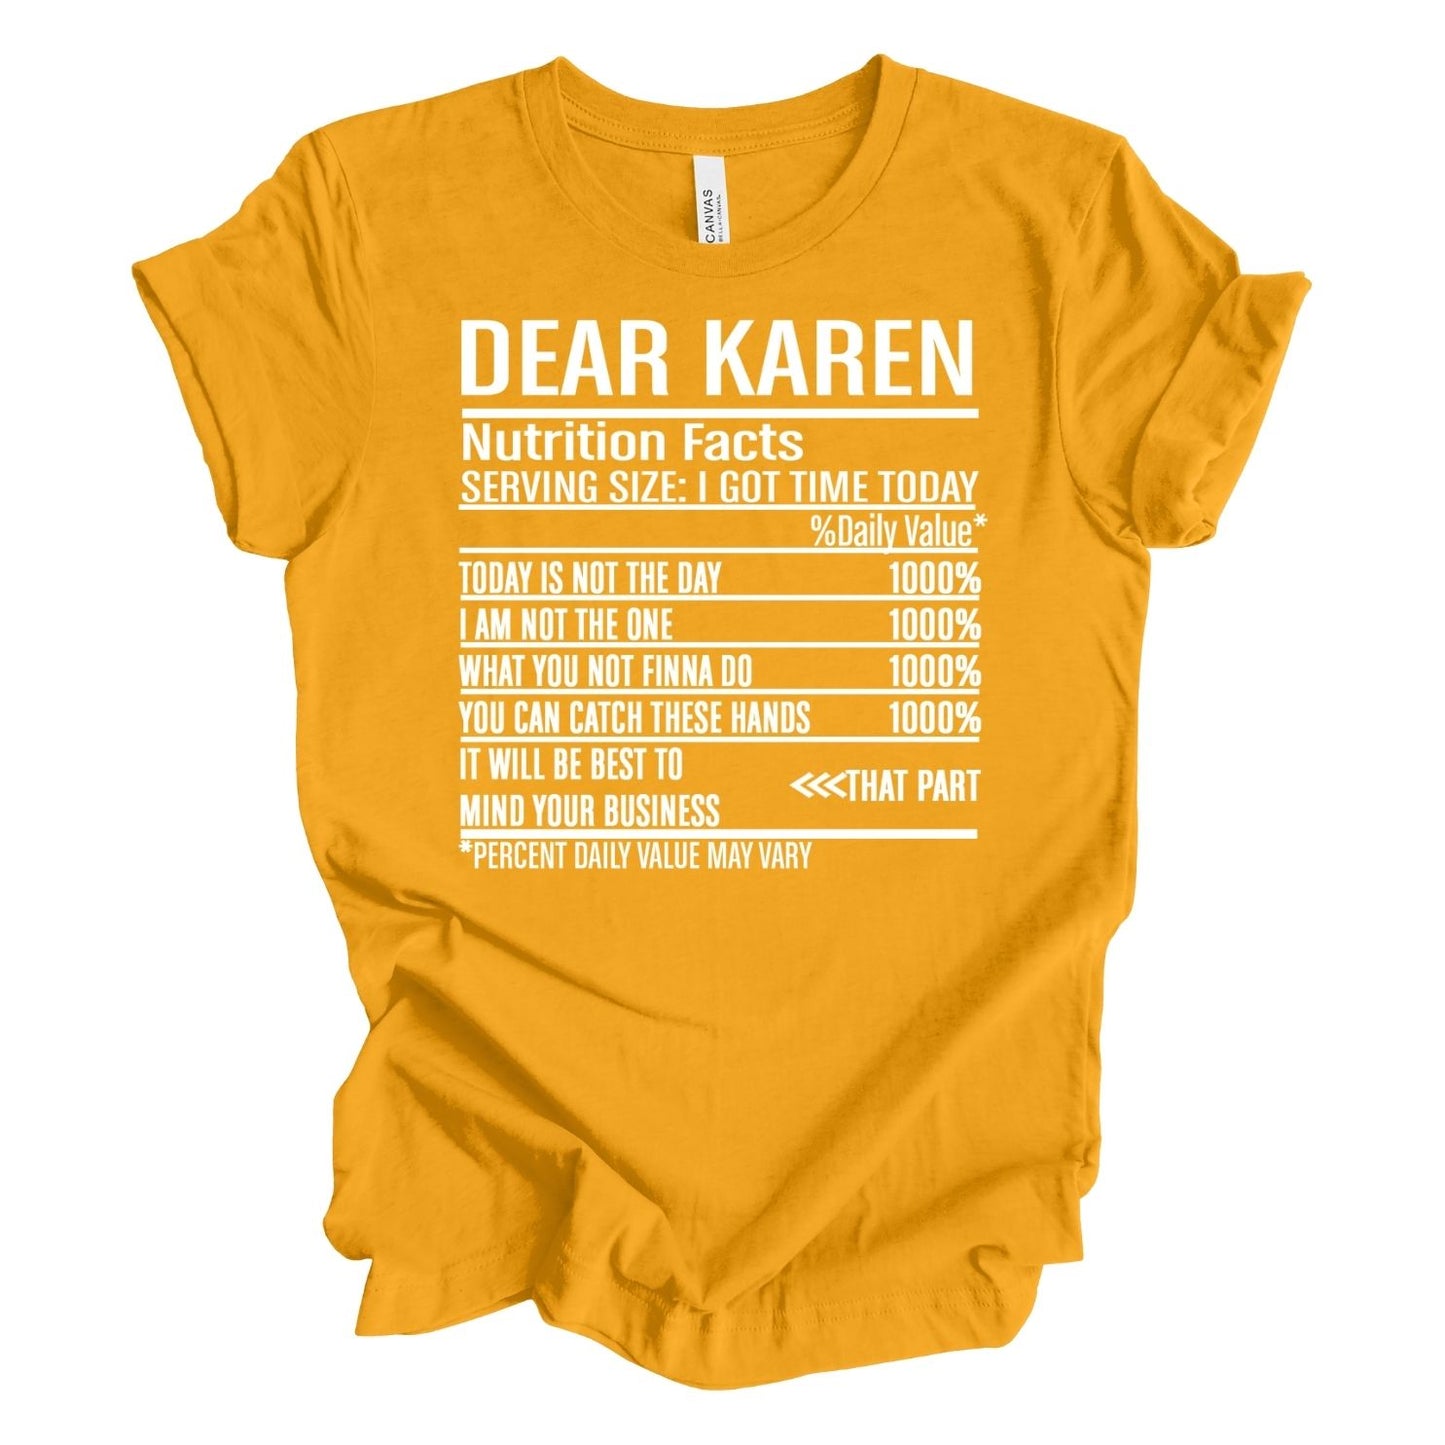 Dear Karen T-shirt